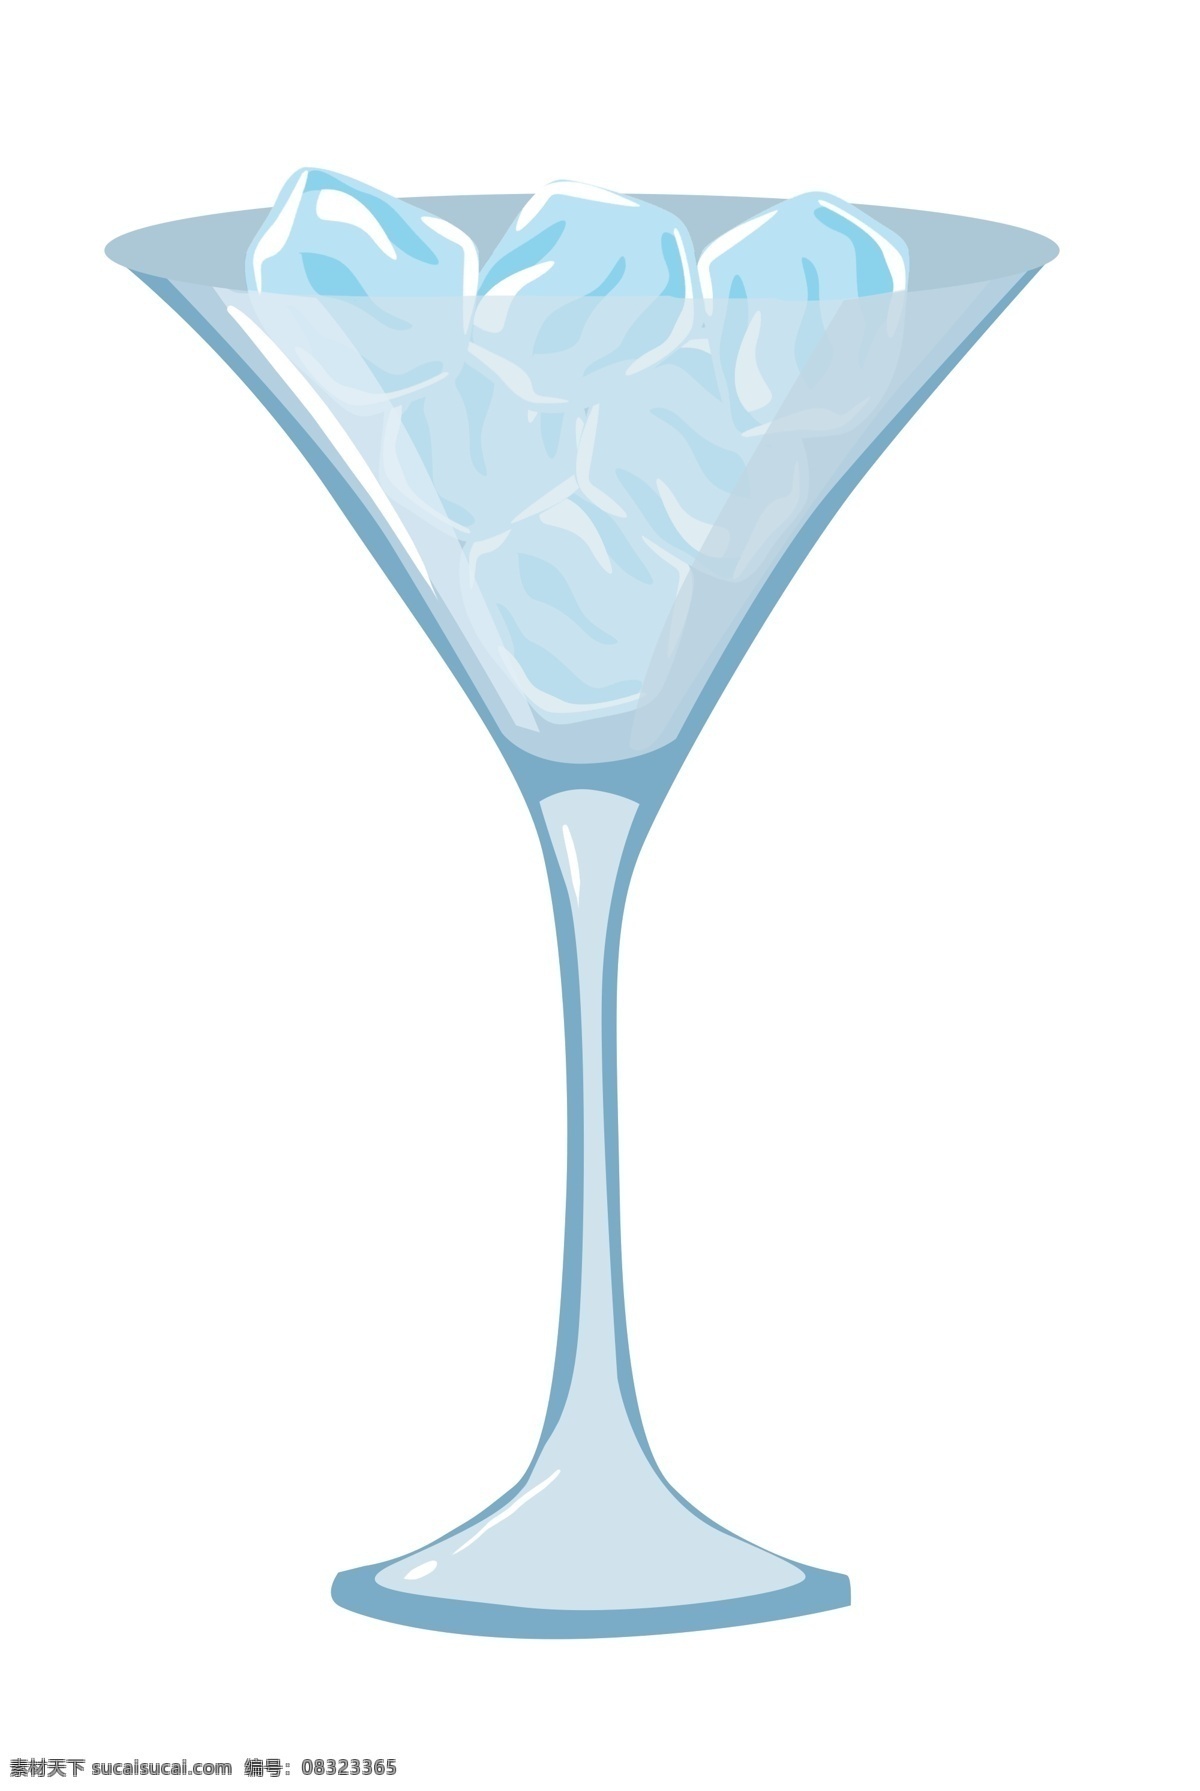 一杯透明冰块 冰块 冷饮 杯子